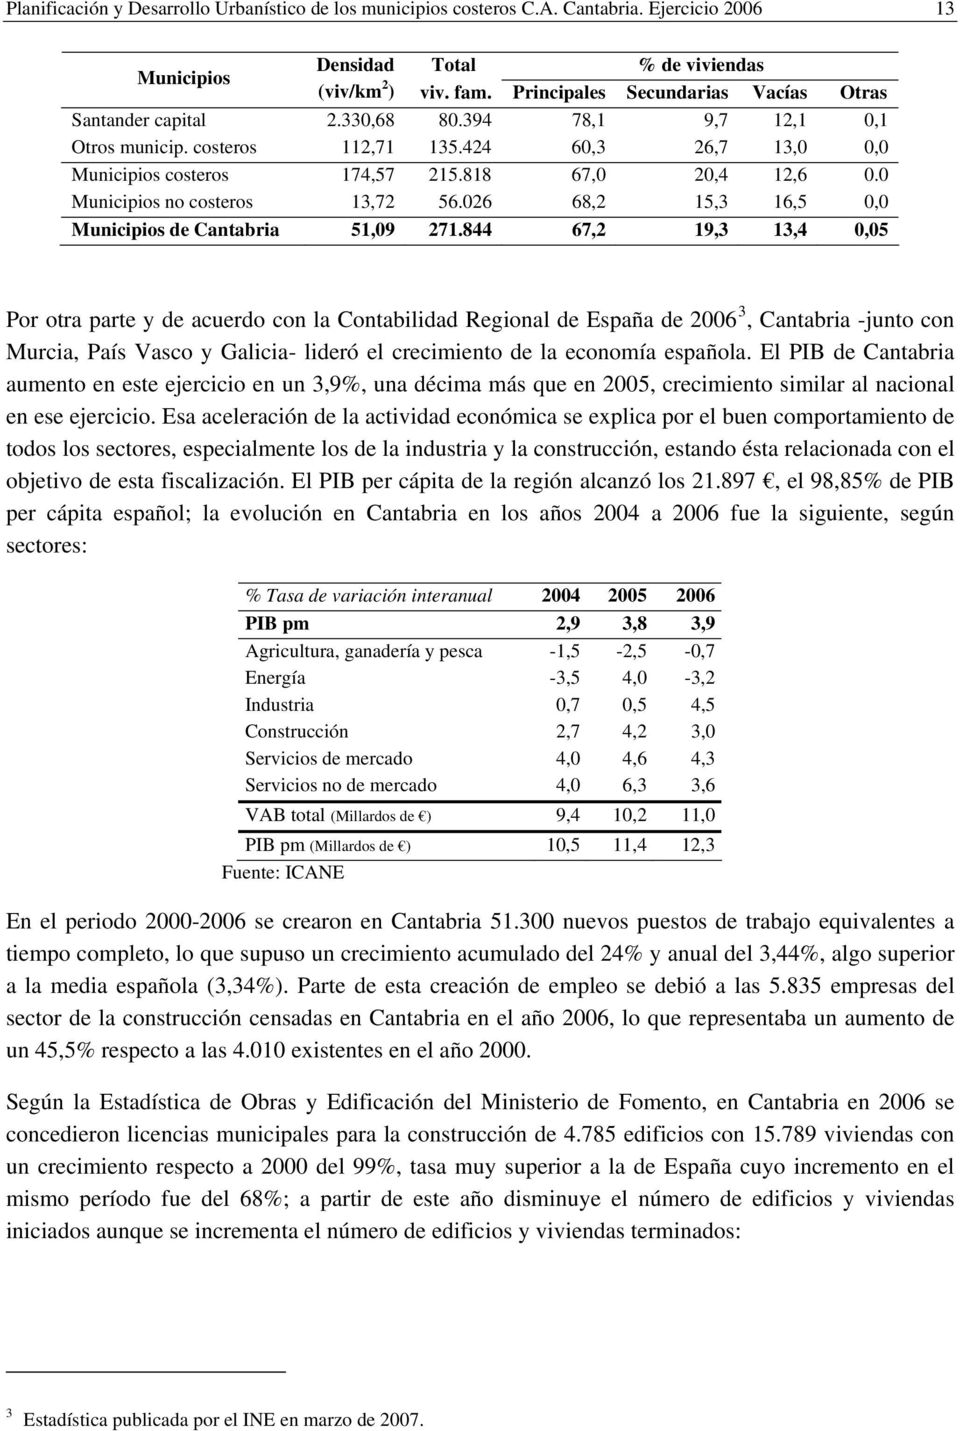 0 Municipios no costeros 13,72 56.026 68,2 15,3 16,5 0,0 Municipios de Cantabria 51,09 271.